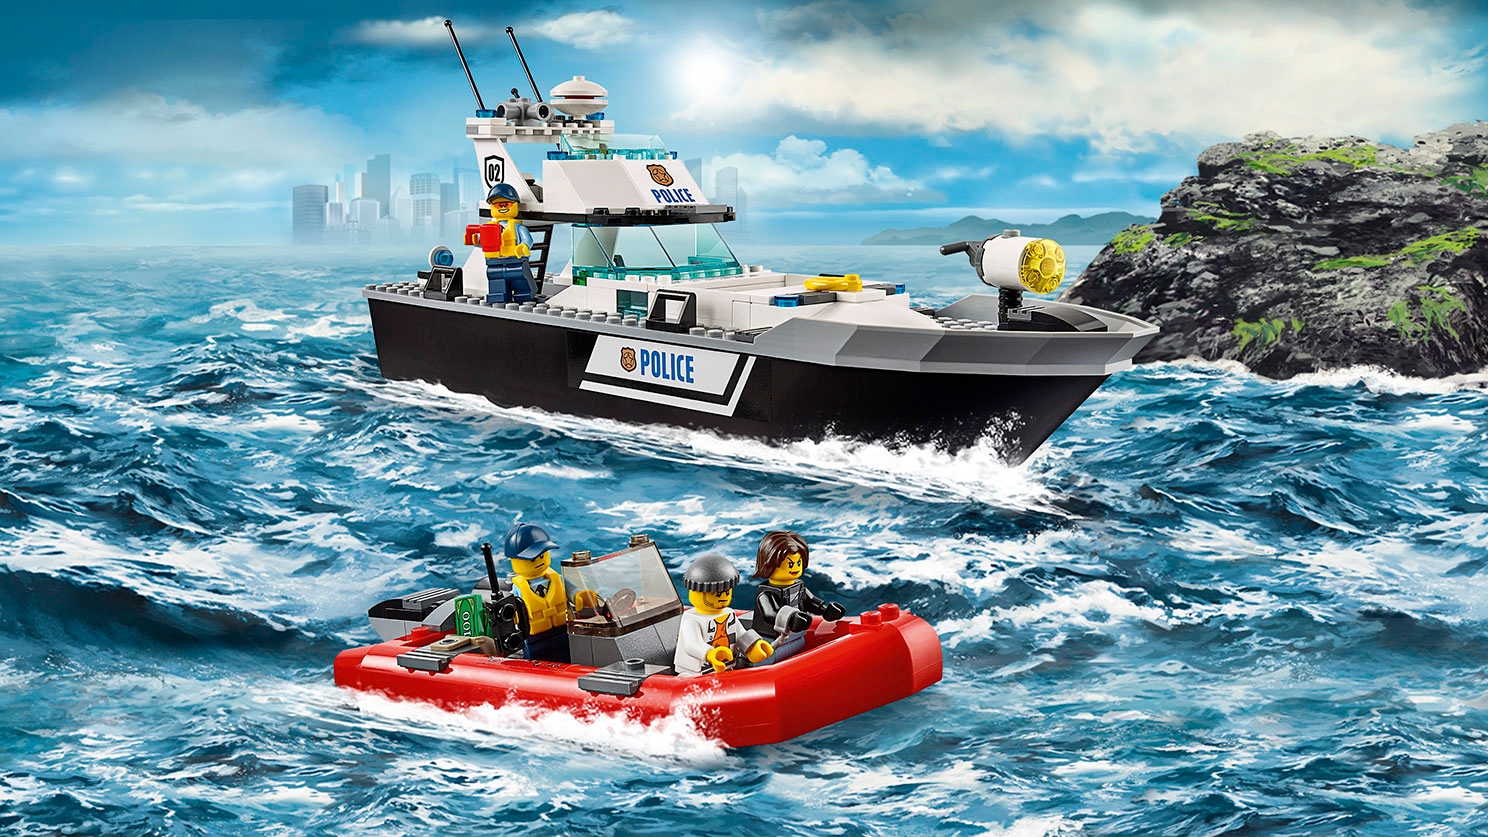 ポリスパトロールボート 60129 - レゴ®シティ セット - LEGO.comキッズ